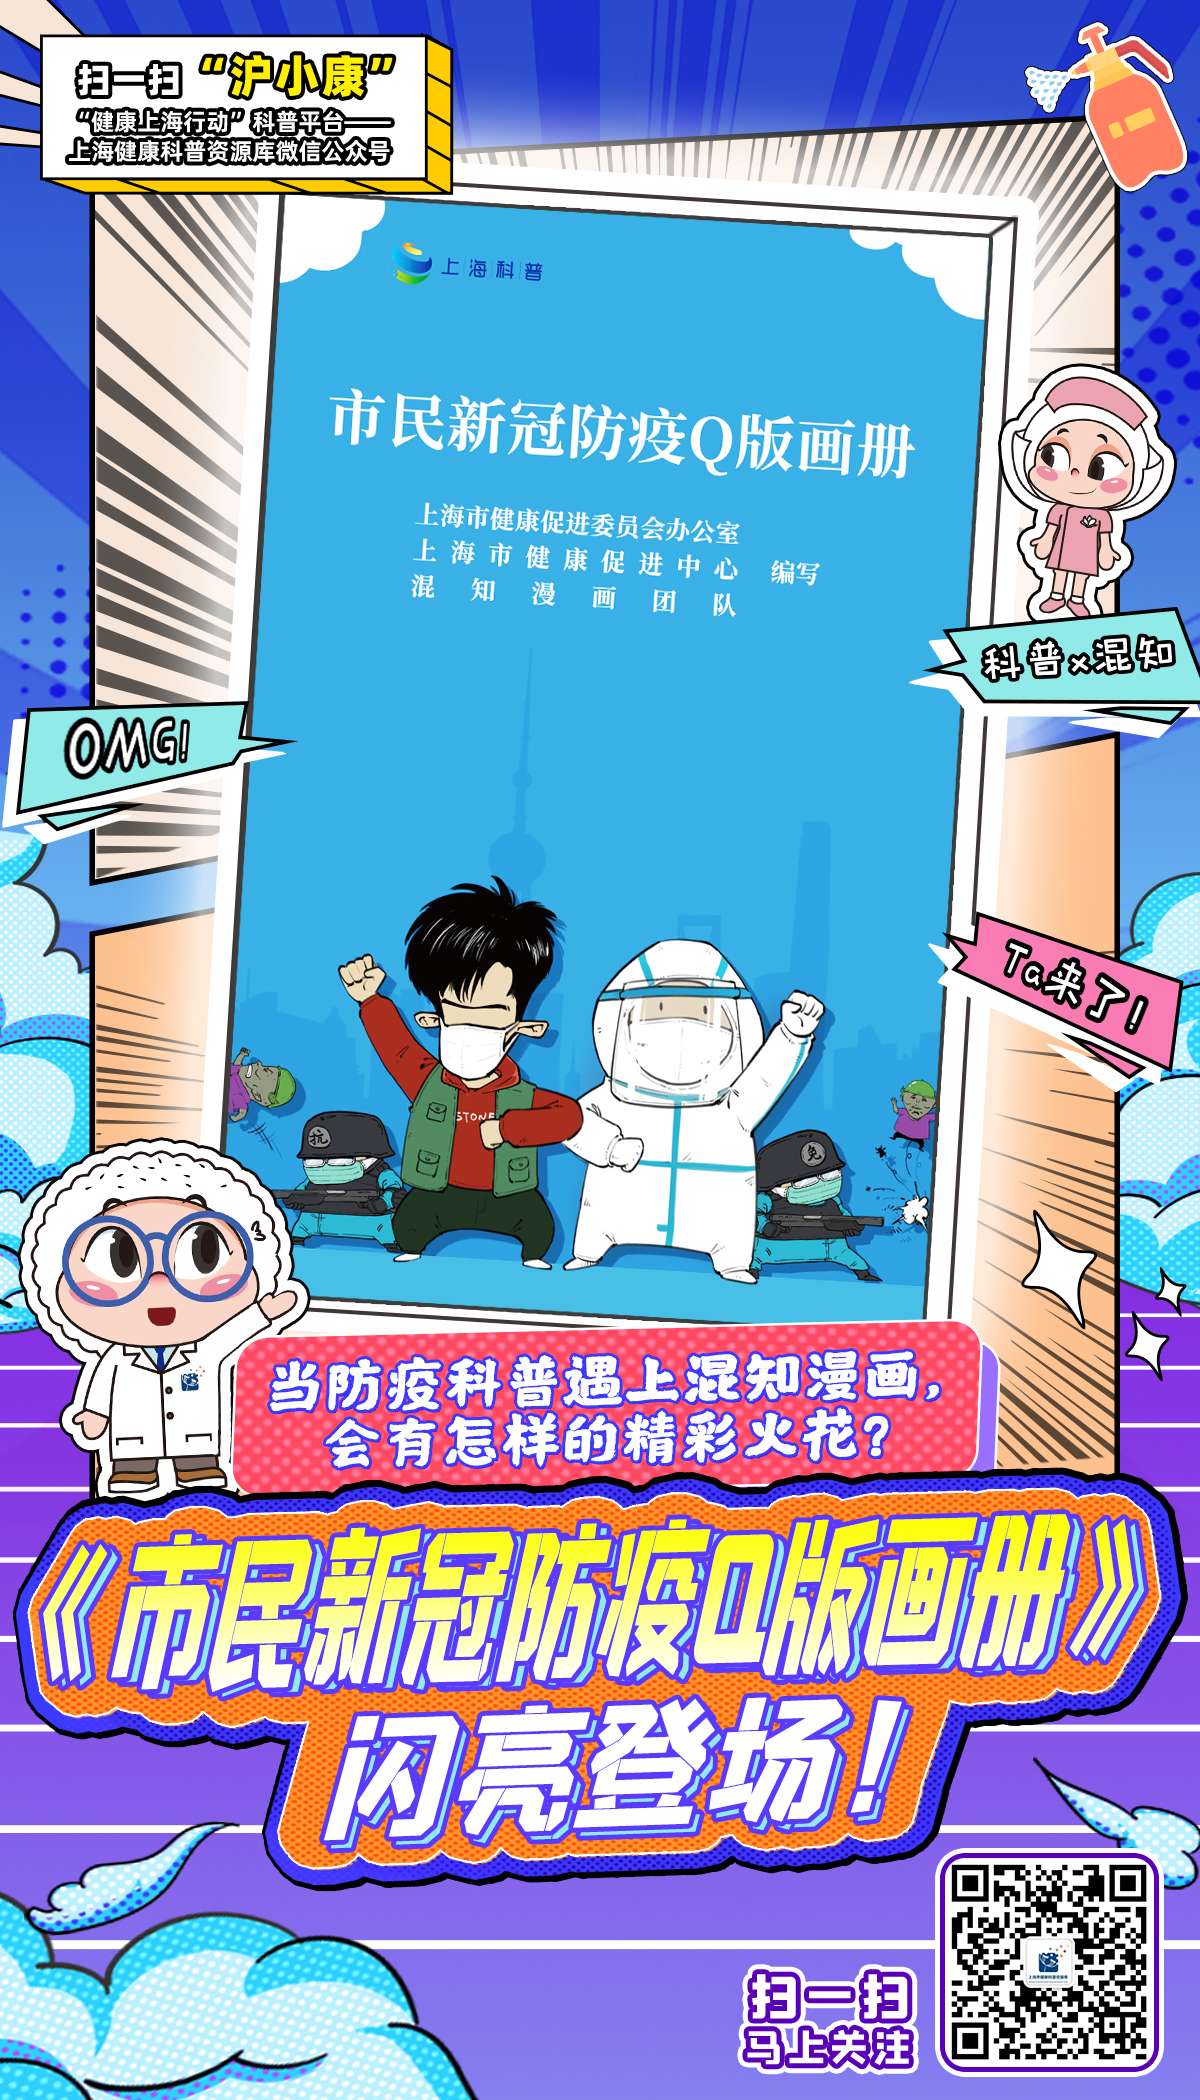 上海：《市民新冠防疫Q版画册》来了